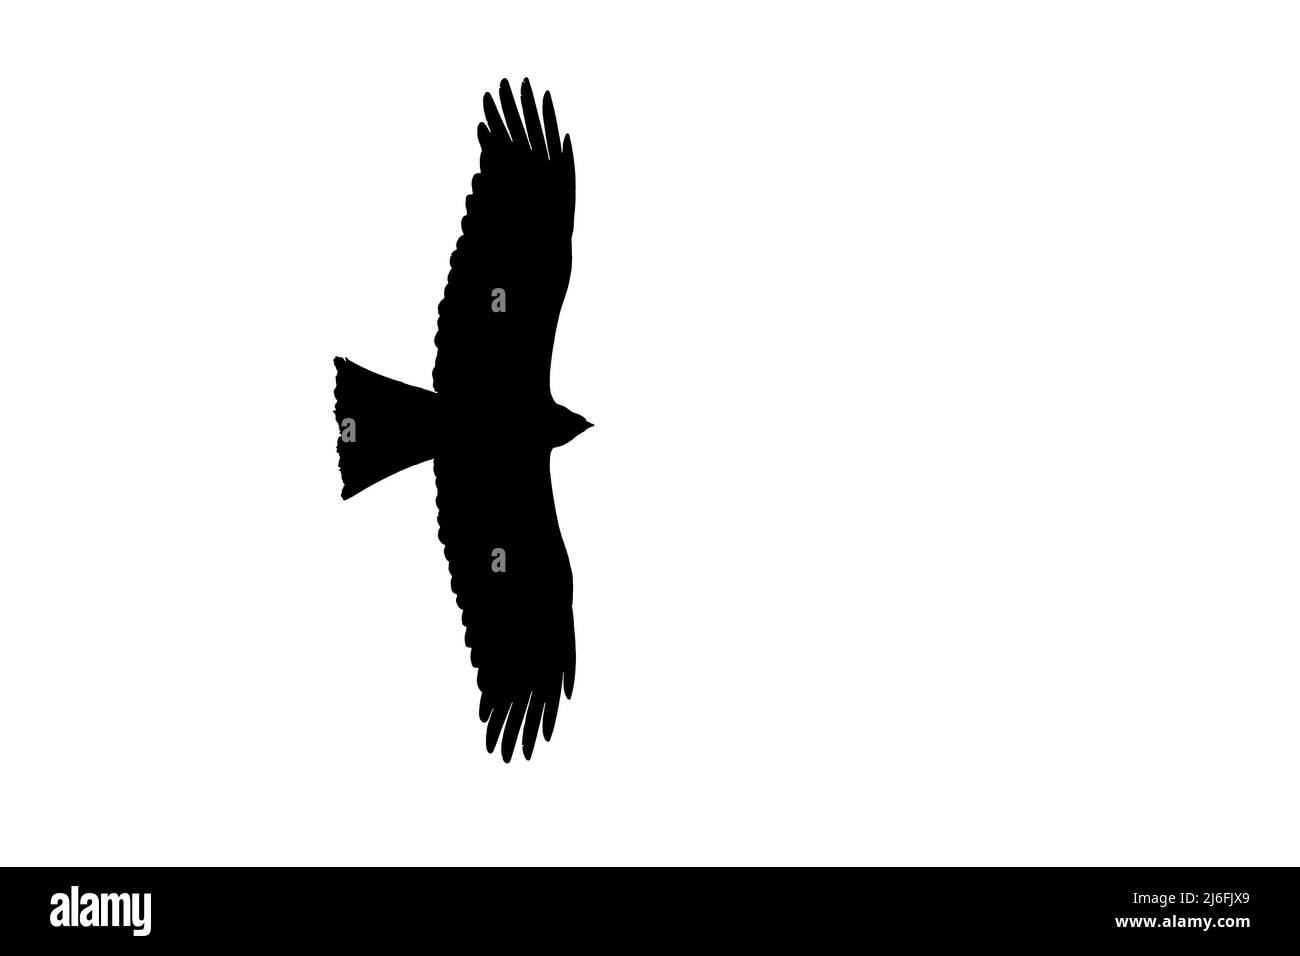 Silhouette eines aufsteigenden schwarzen Drachen (Milvus migrans) im Flug, umrissen vor weißem Hintergrund, um Flügel und Schwanzformen zu zeigen Stockfoto